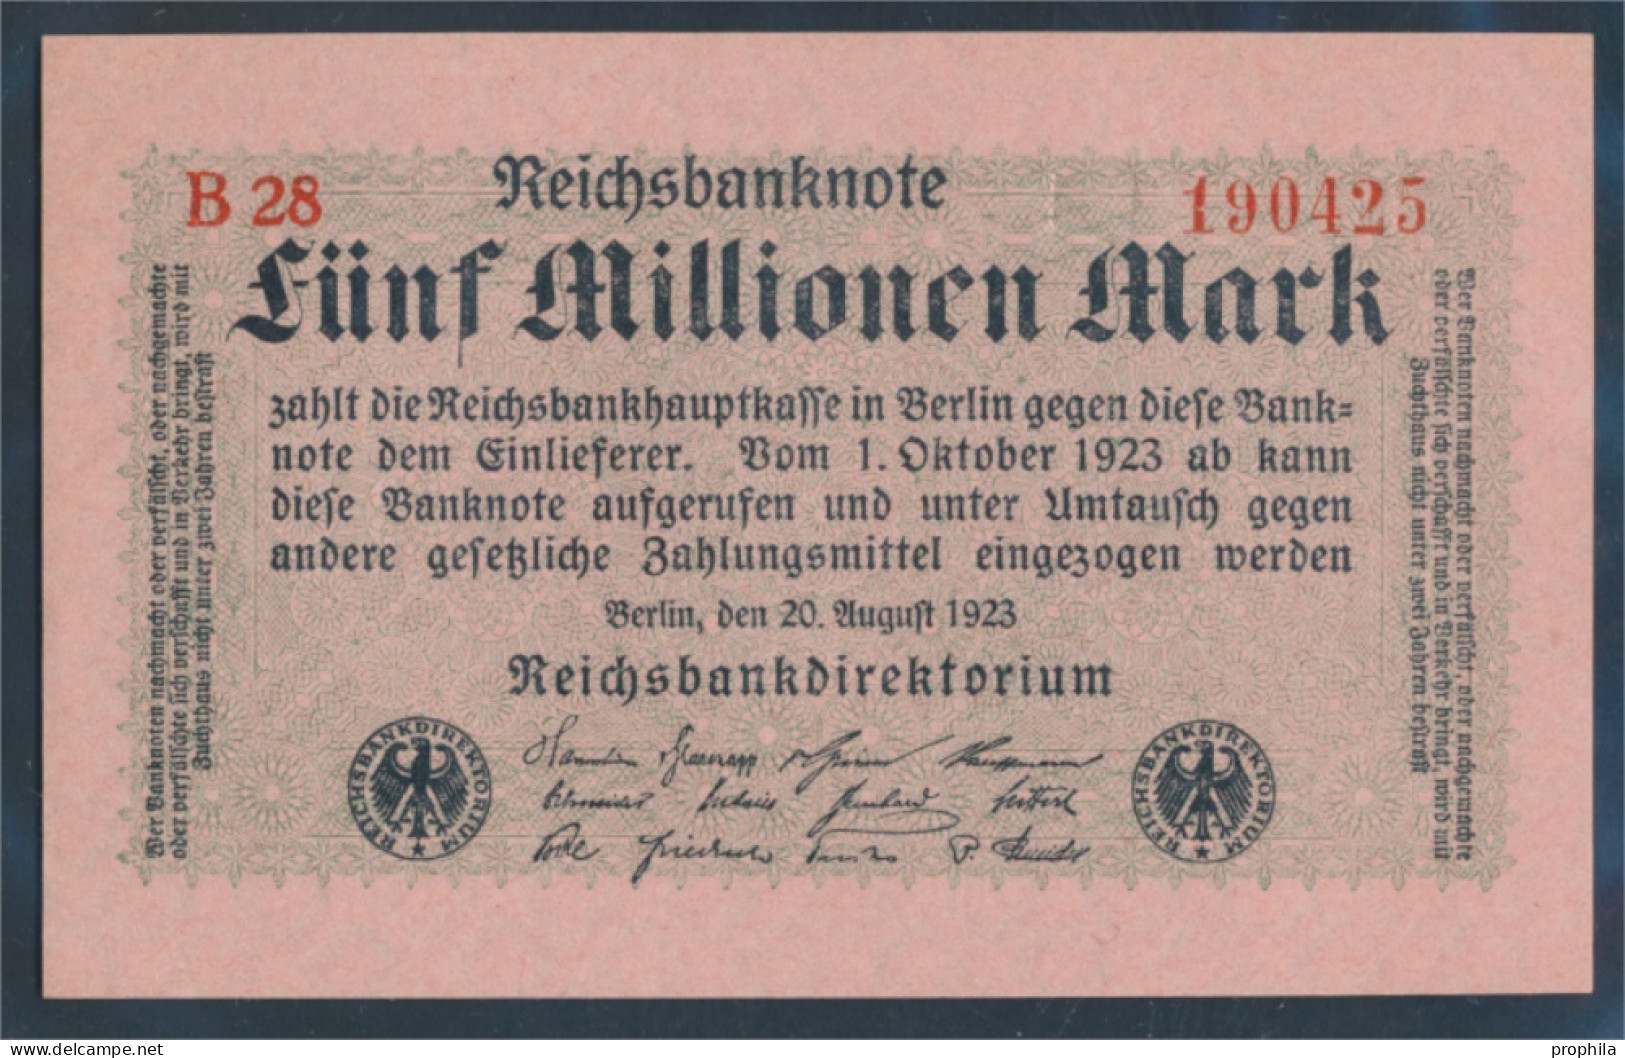 Deutsches Reich RosbgNr: 104b, Privatfirmendruck Rotes Firmenzeichen Bankfrisch 1923 5 Millionen Mark (10298878 - 5 Miljoen Mark